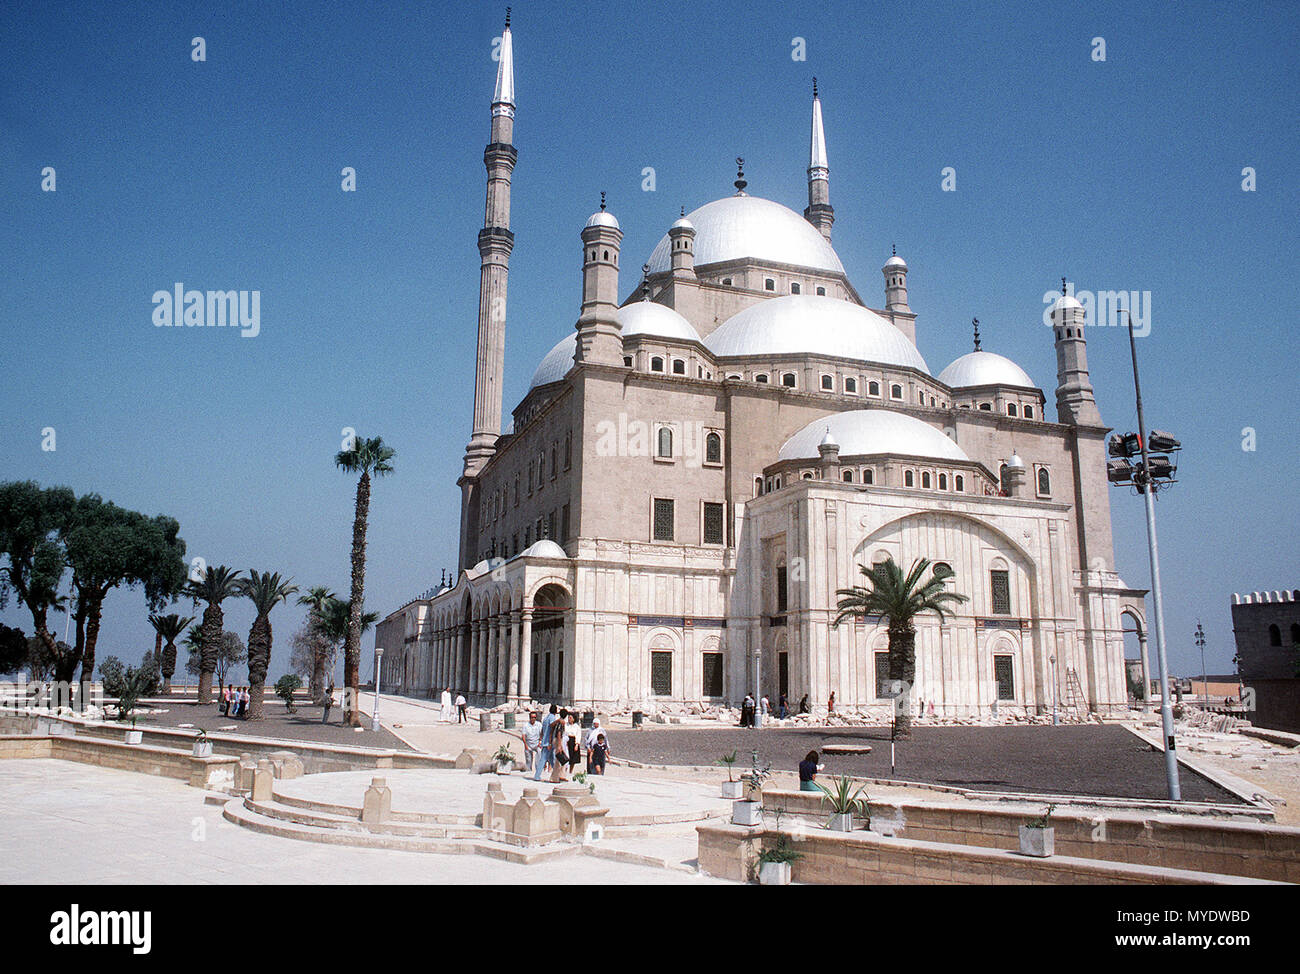 Die Moschee des Mohammed Ali auf der Zitadelle von Kairo Kairo 1848 AD in der Innenstadt von Kairo gebaut. Genaue Datum schossen Unbekannte (Metadaten, 1983), während die caption Unbekannt sagt) Stockfoto